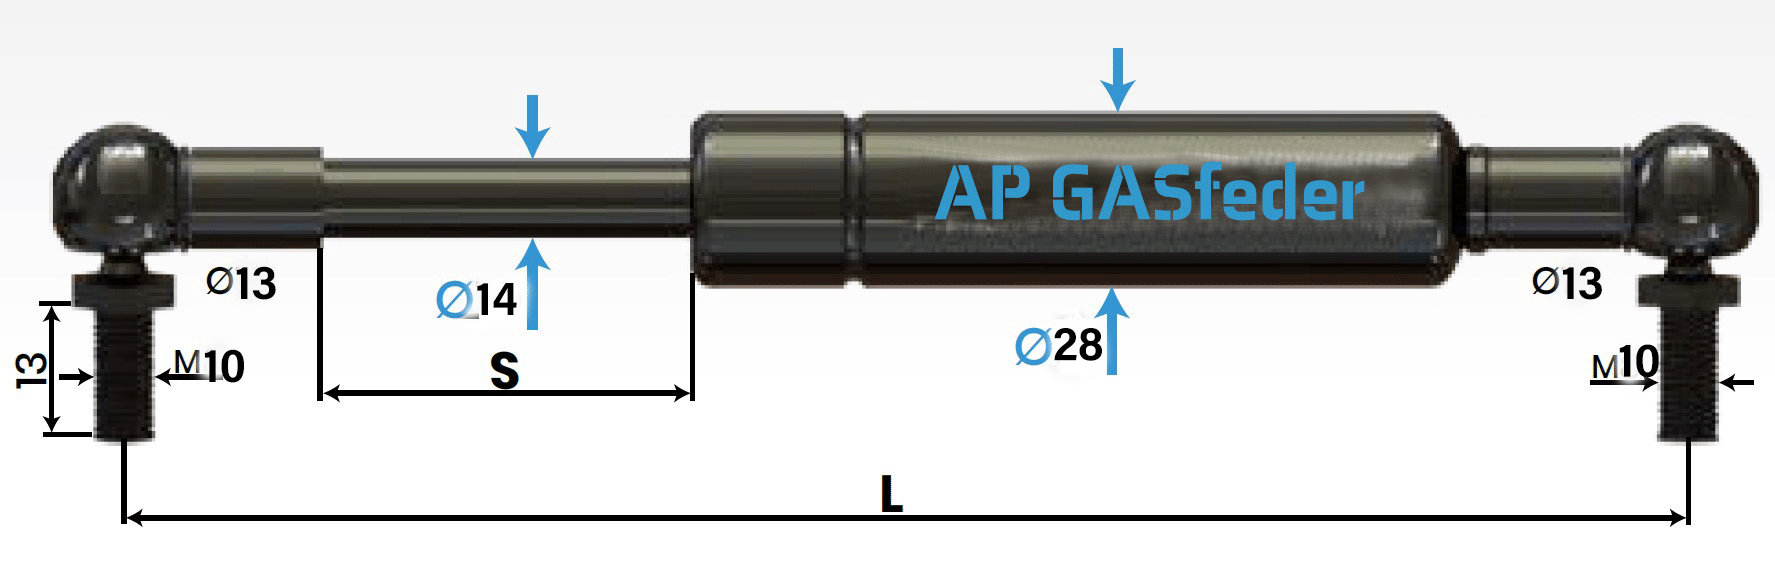 Bild von AP GASfeder 2100N, 14/28, Hub(S): 400 mm, Länge (L): 935 mm,  Alternatvie SRST.2388LU